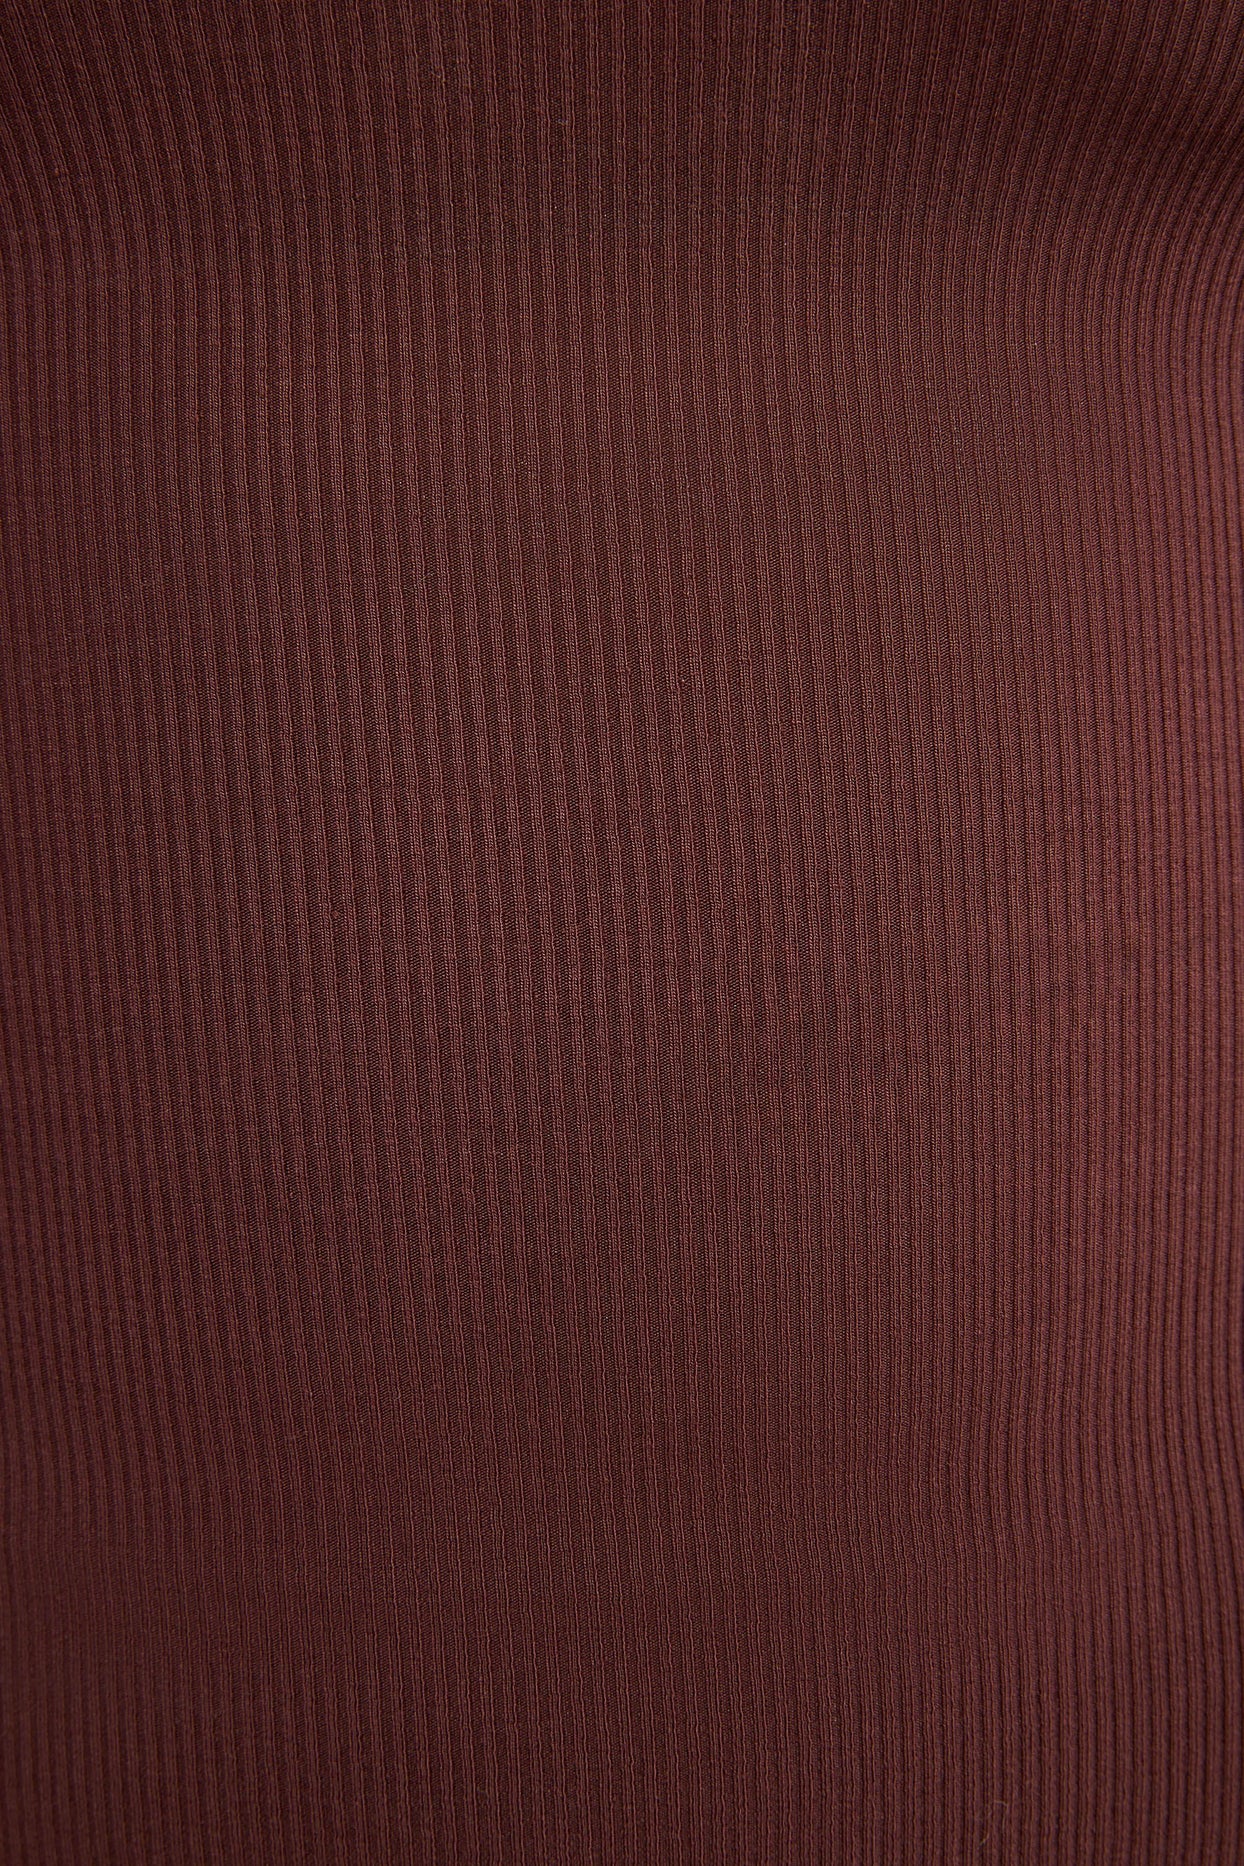 Top de manga larga con cuello cuadrado de modal acanalado en color chocolate